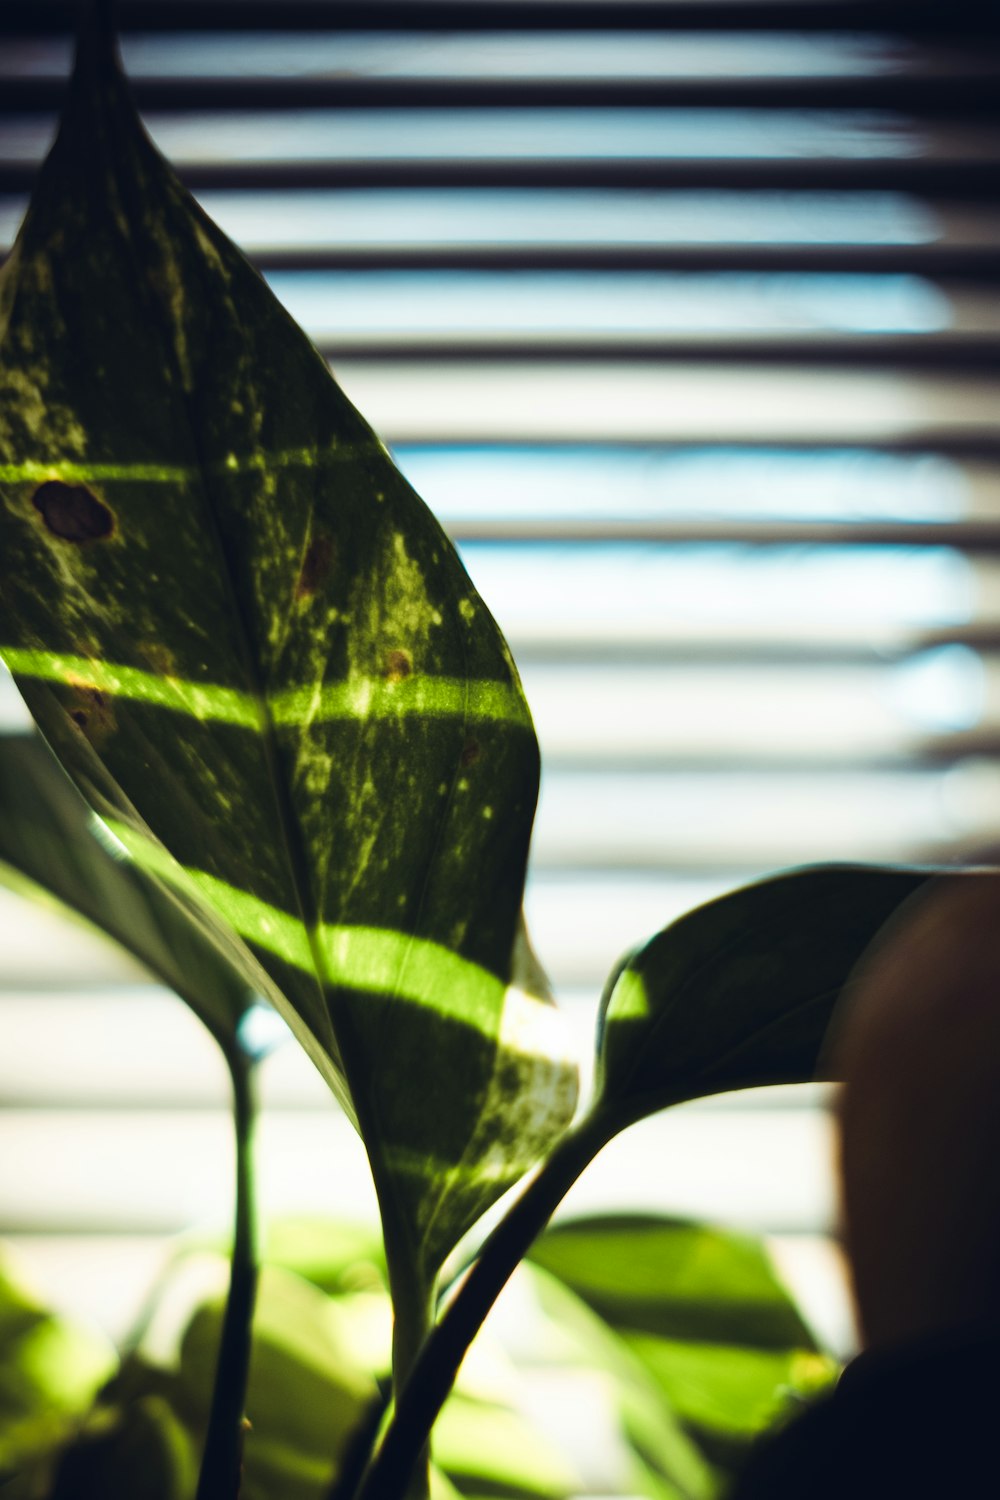 green leaf near white window blinds